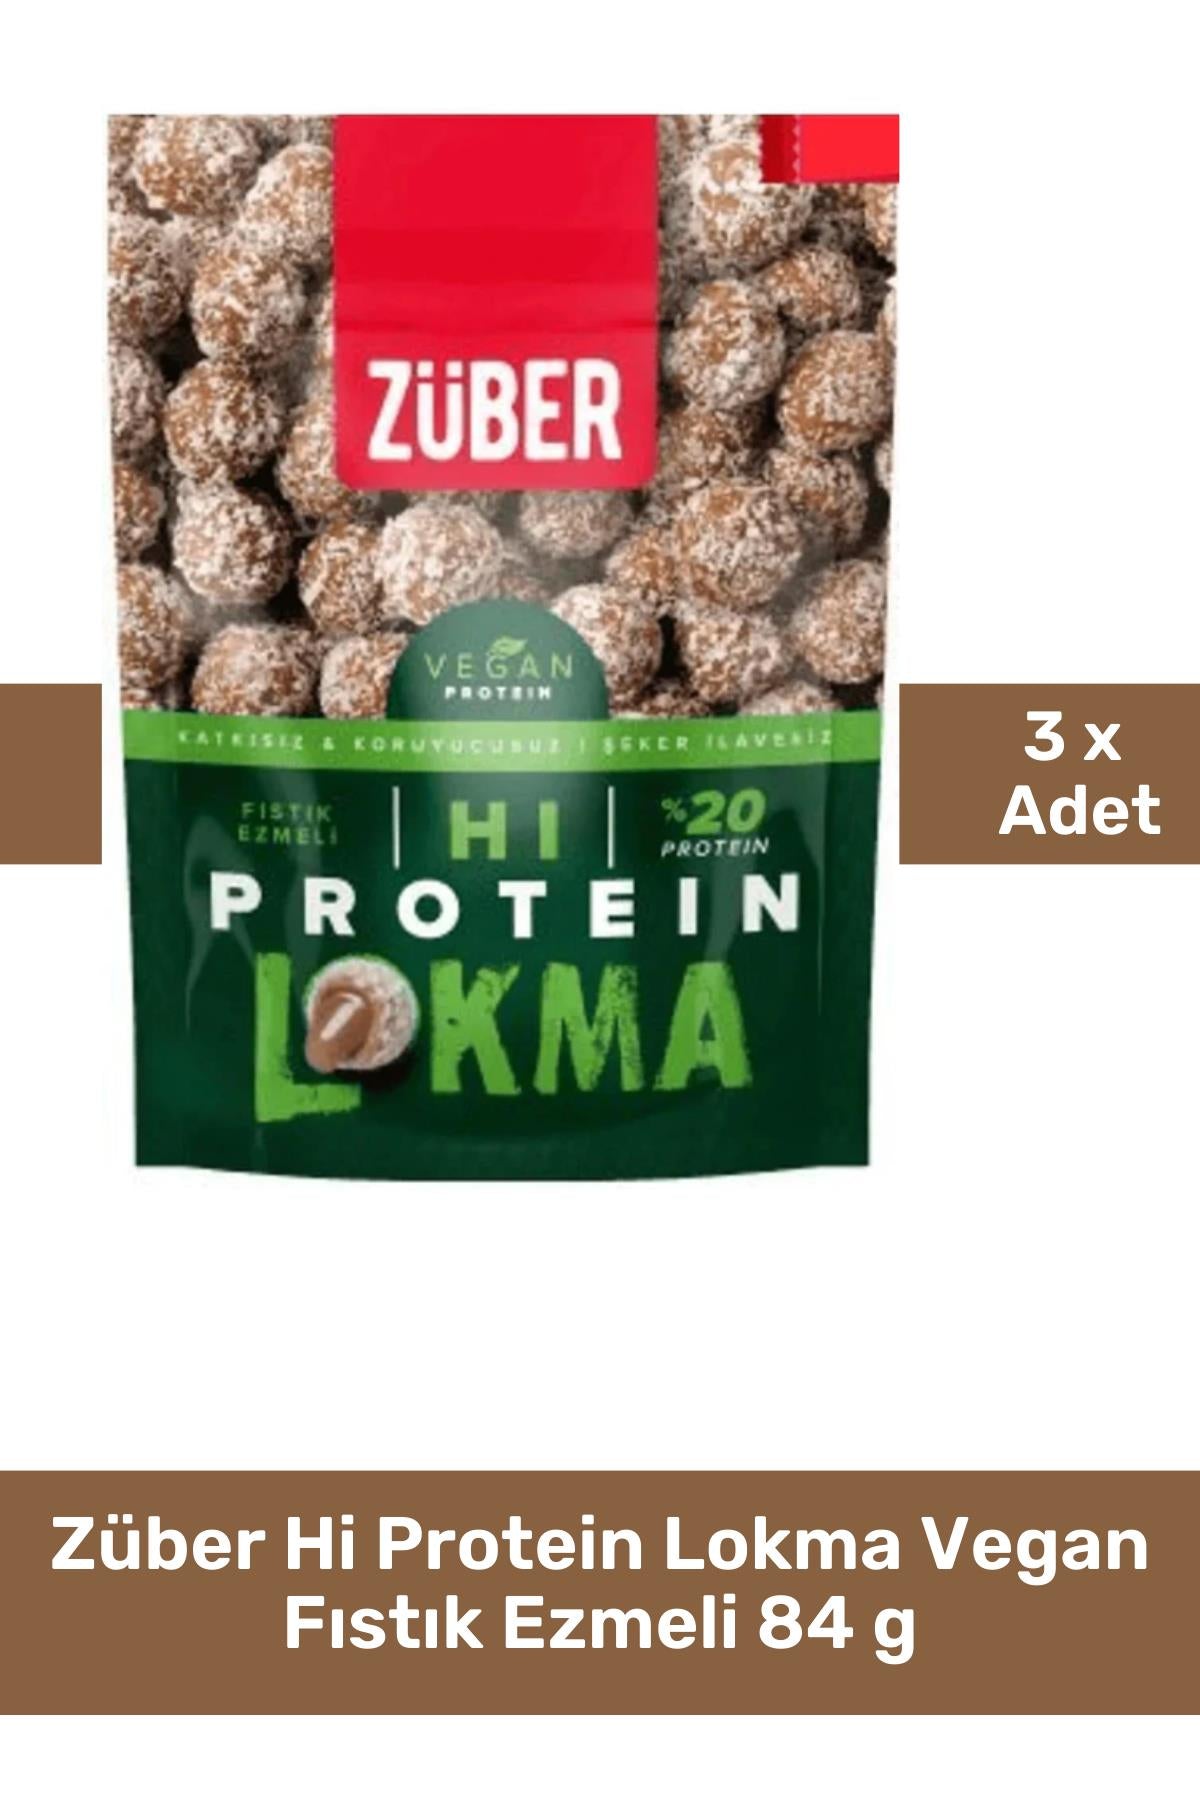 Züber Hi Protein Lokma Vegan Fıstık Ezmeli 84 g 3'lü Paket